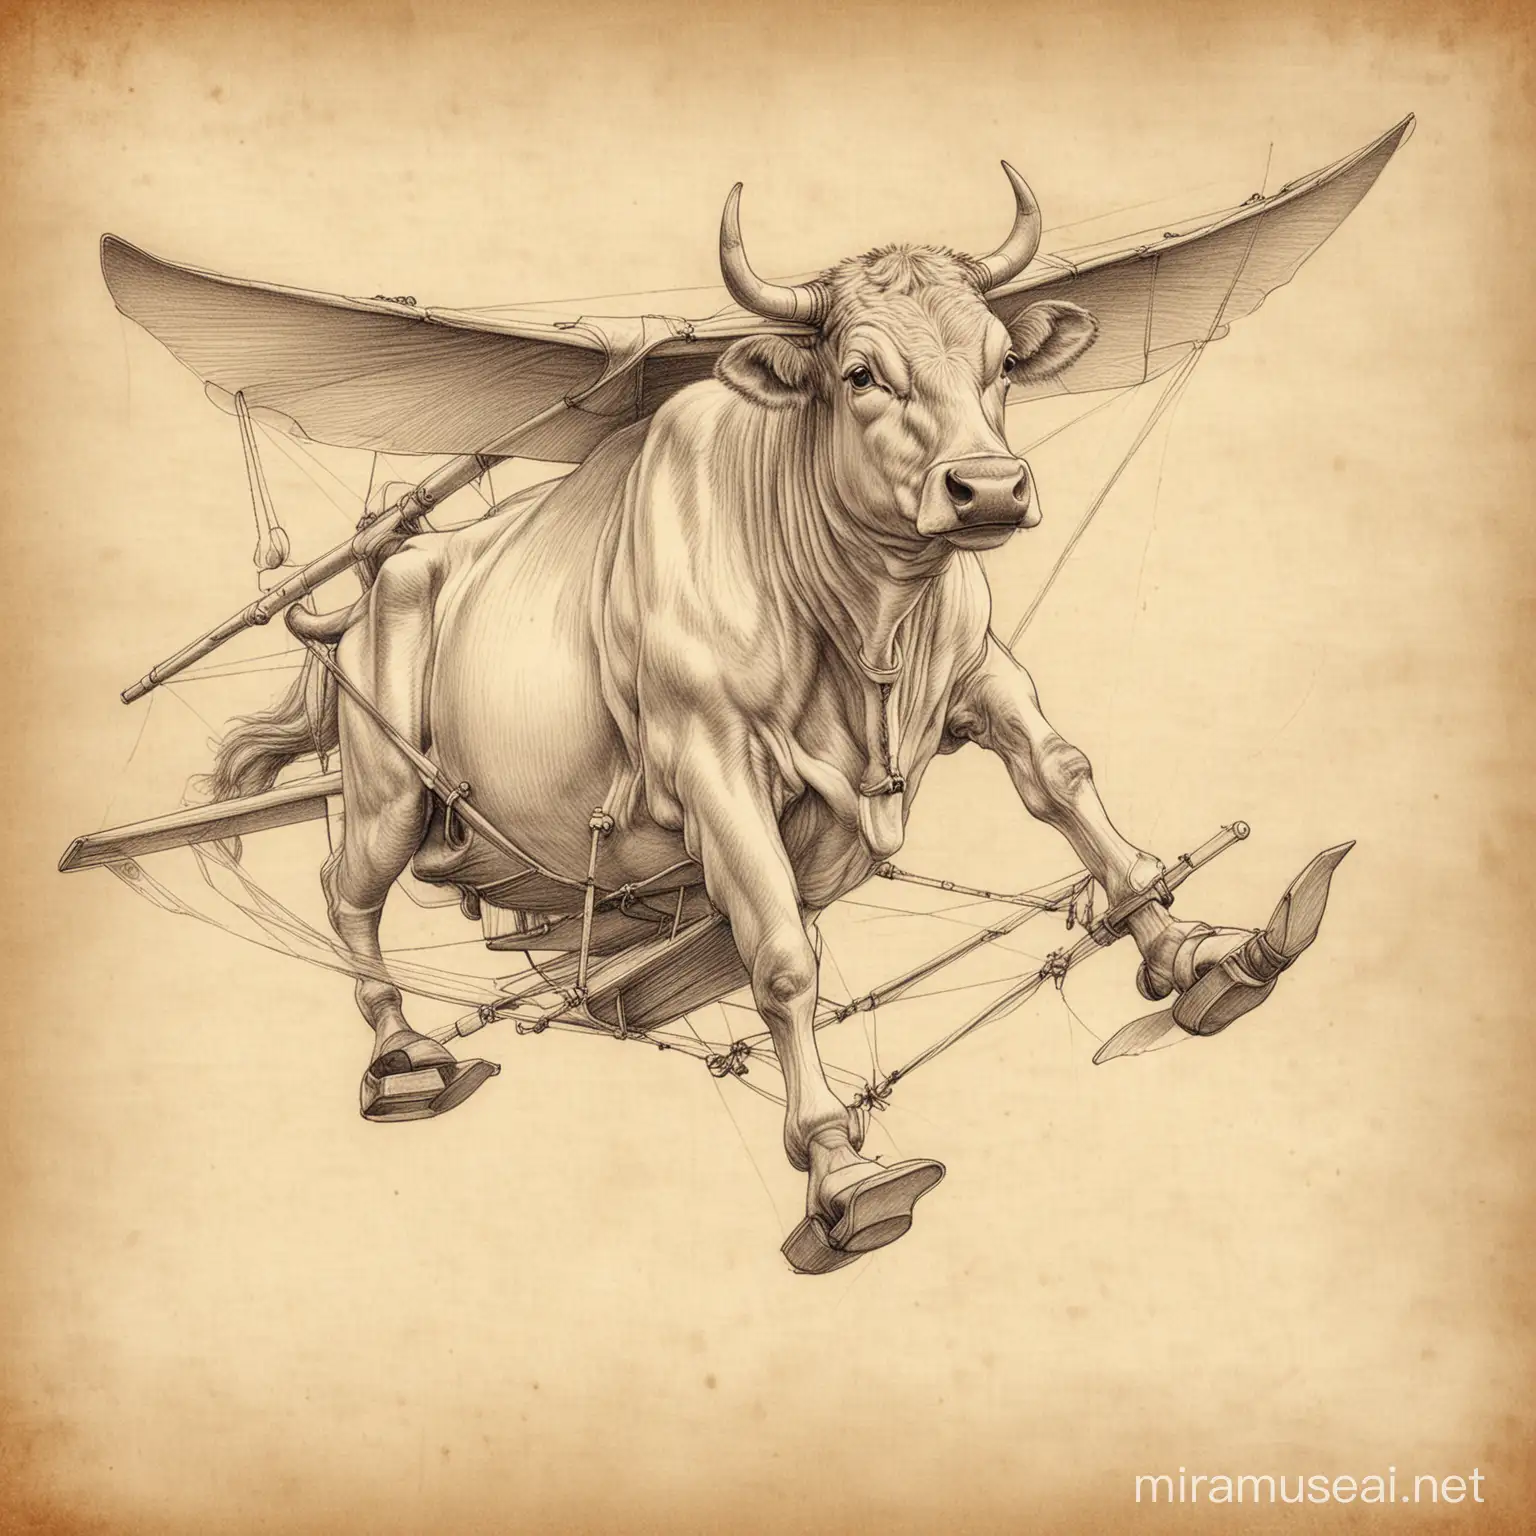 a sketch of a cow piloting a glider drawn in the style of leonardo da vinci pencil sketch